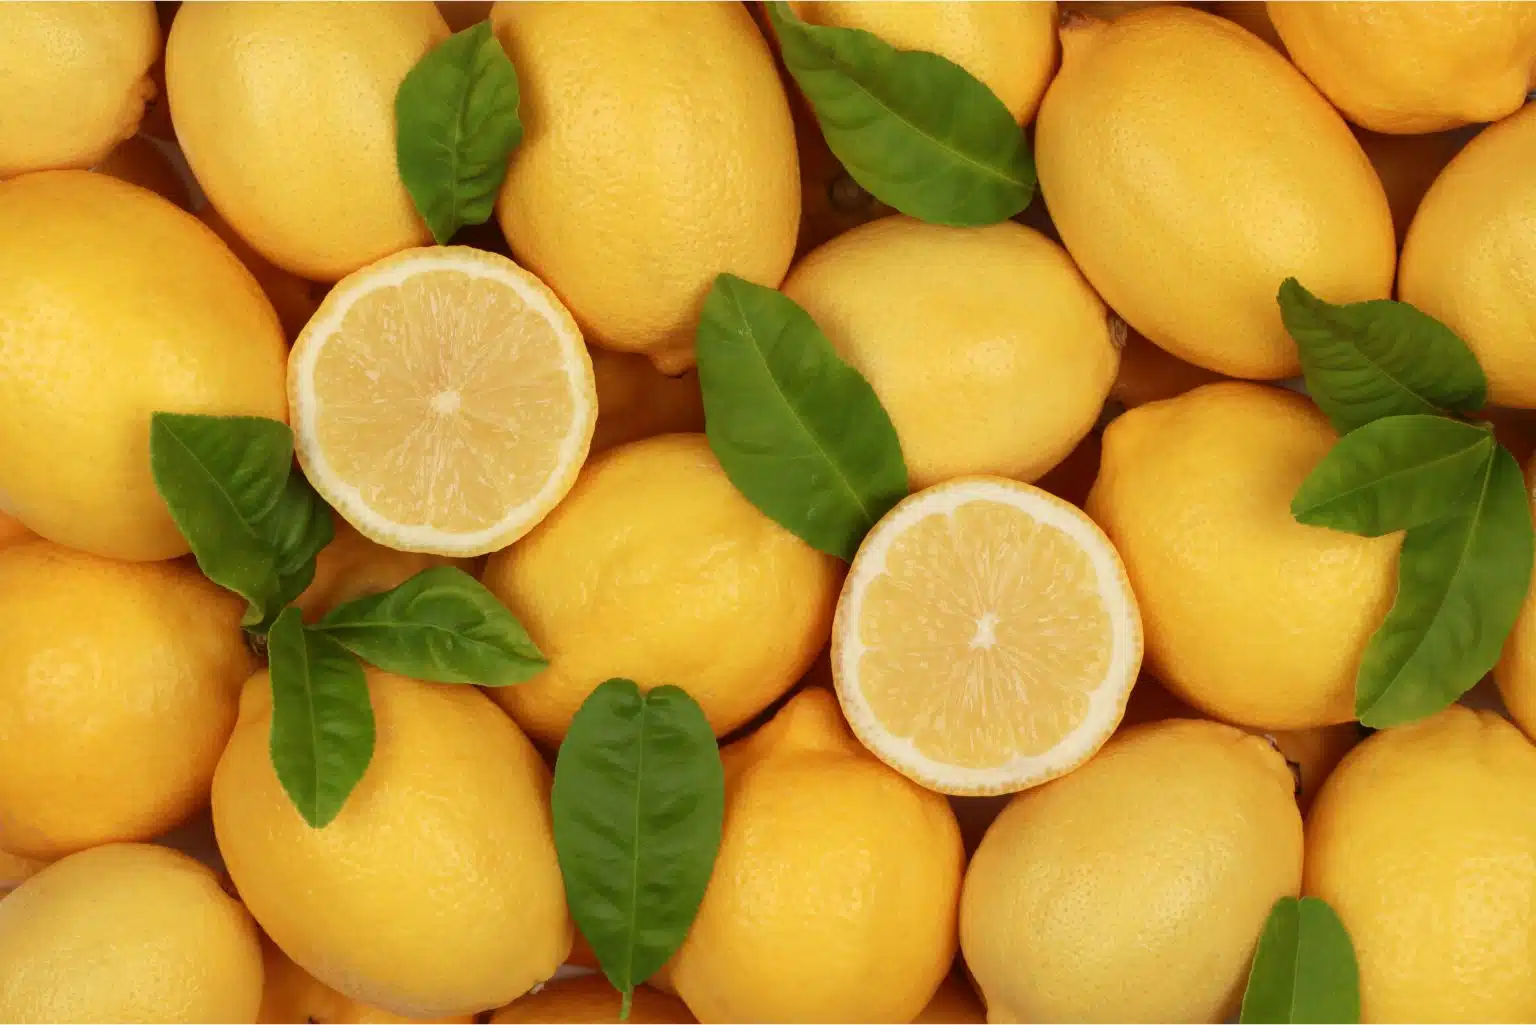 Conheça Os Benefícios Do Limão Siciliano E Como Incorporá-Lo Em Sua Dieta Saudável